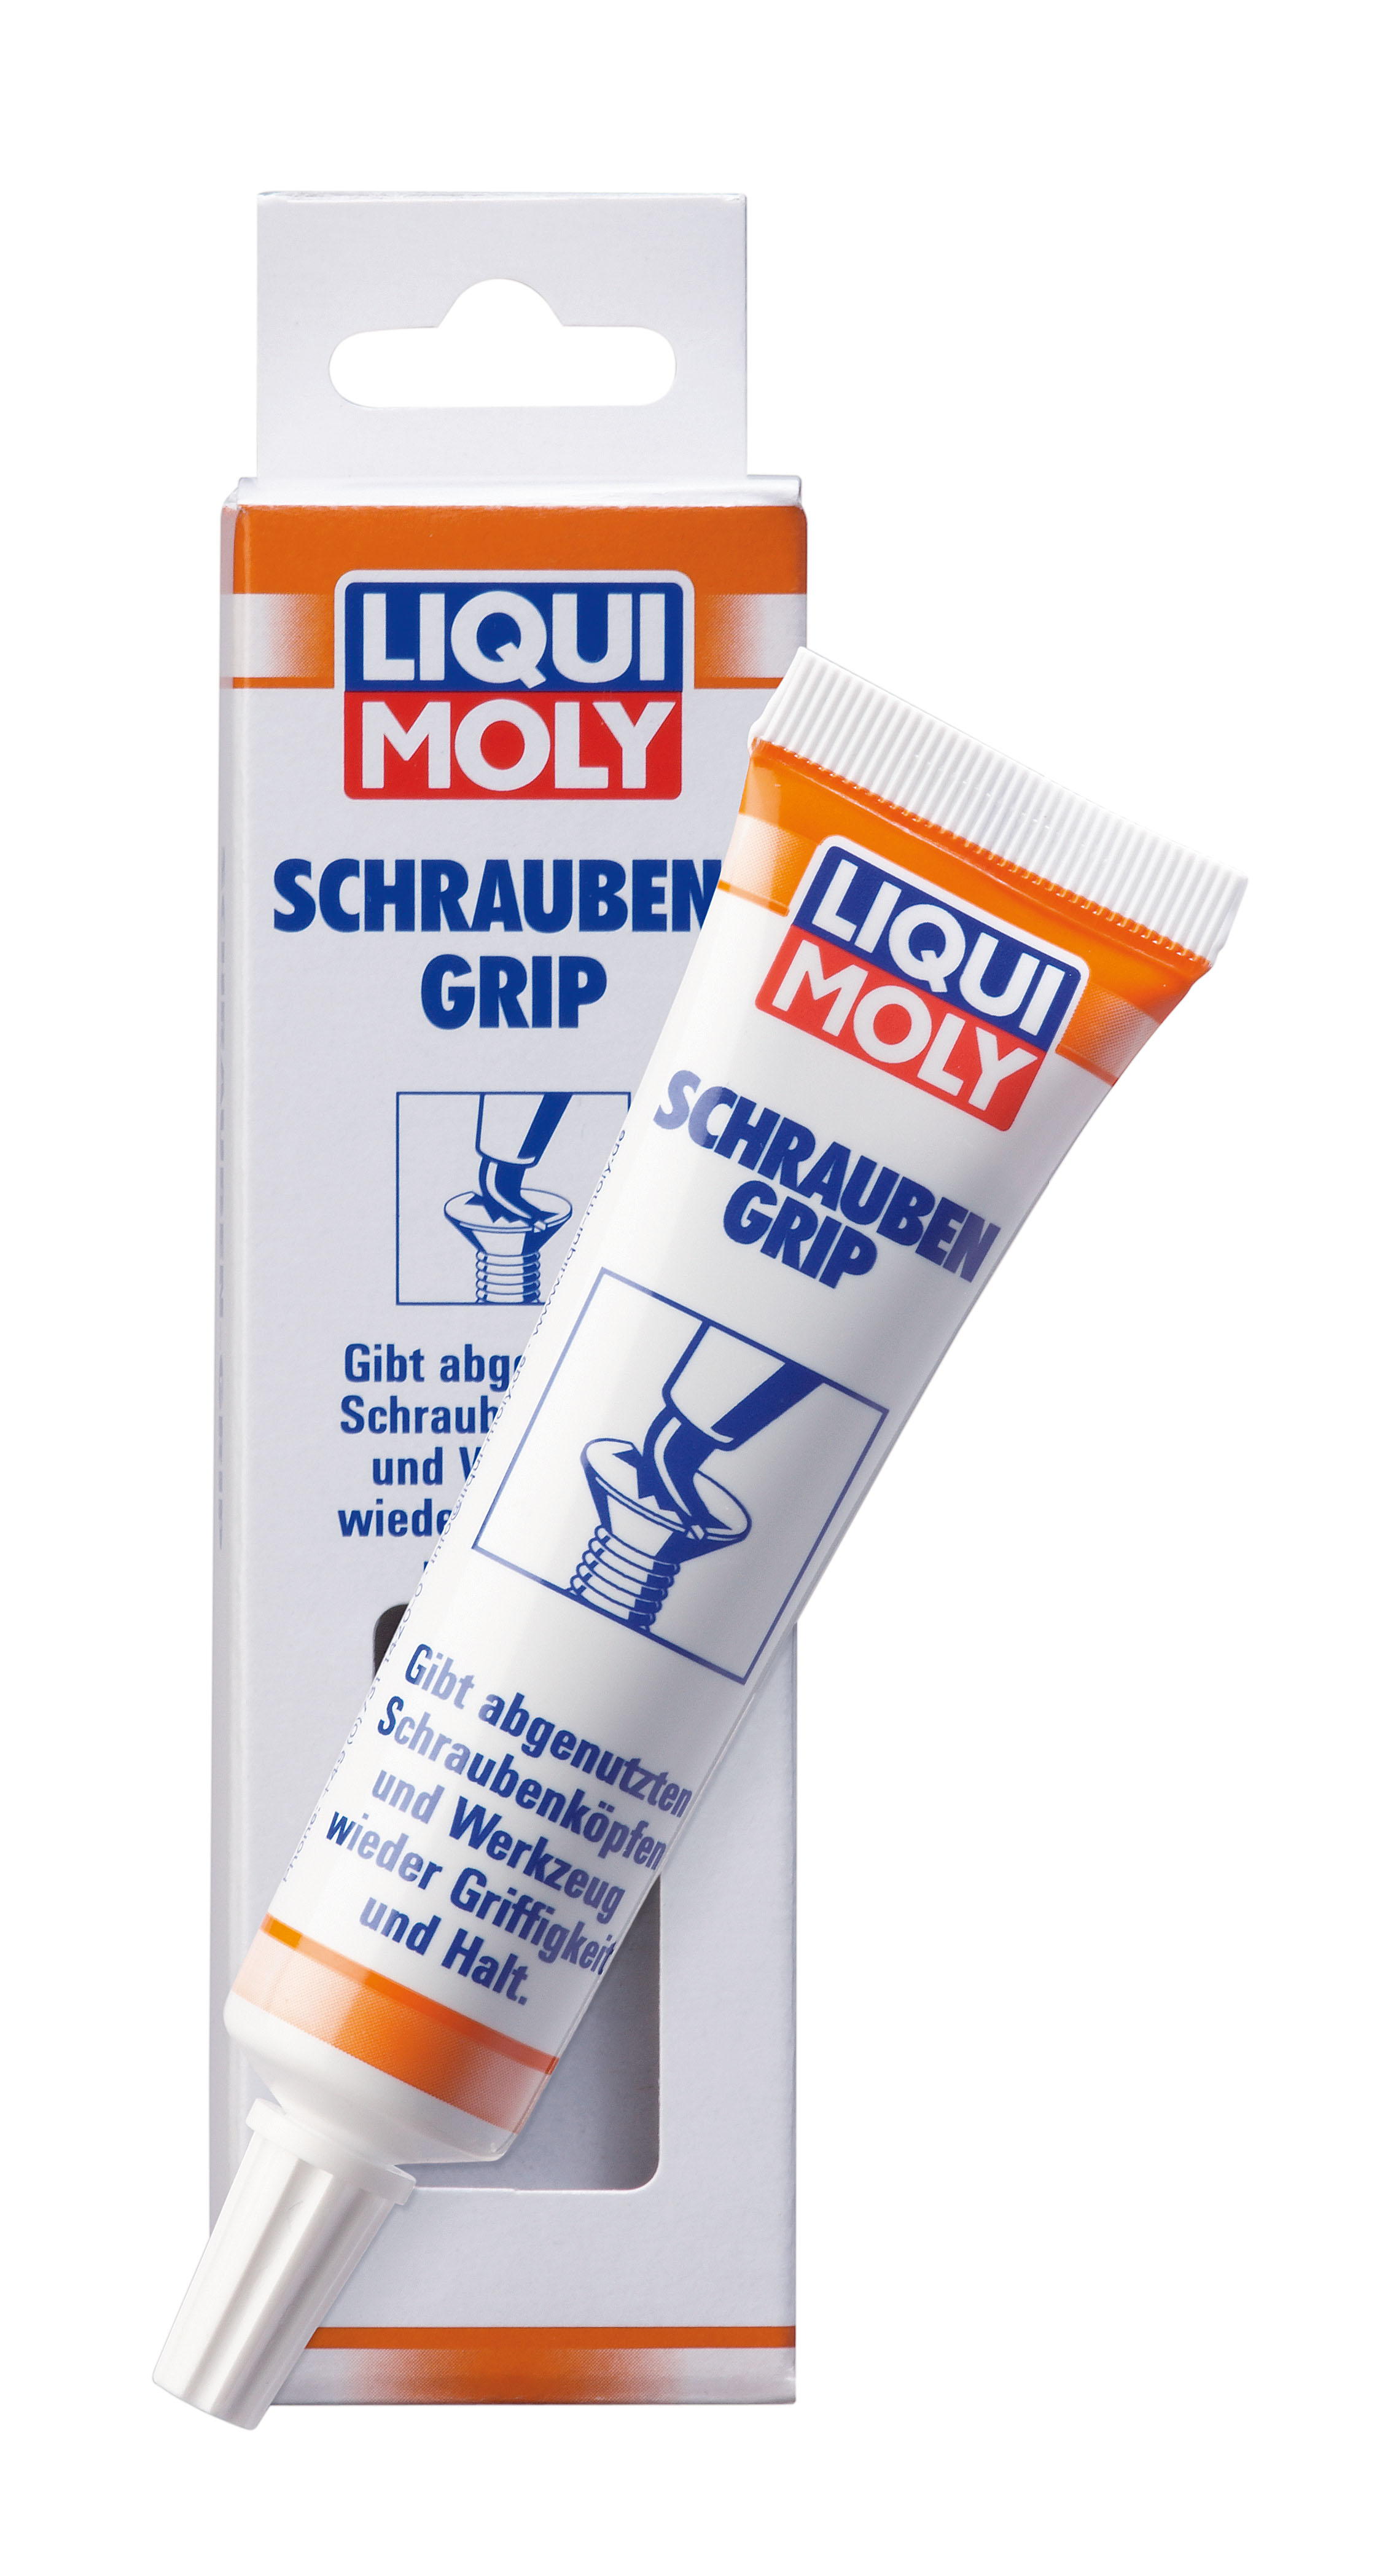 LIQUI MOLY Schrauben-Grip Паста для фиксации инструмента